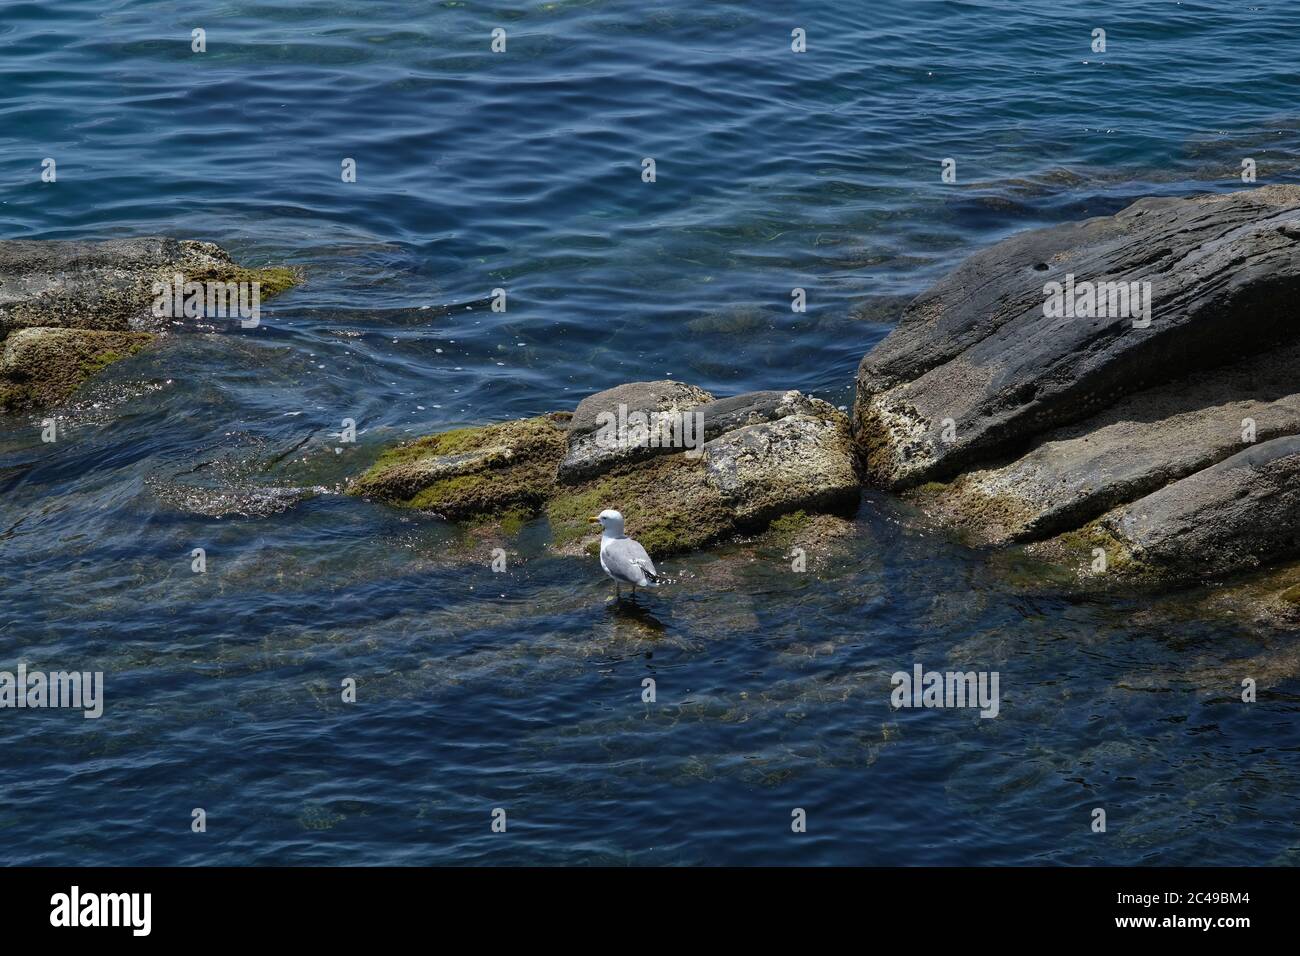 Mouette sur la rive de la mer avec des rochers dans les Cinque Terre. Photo libre de droits. Banque D'Images